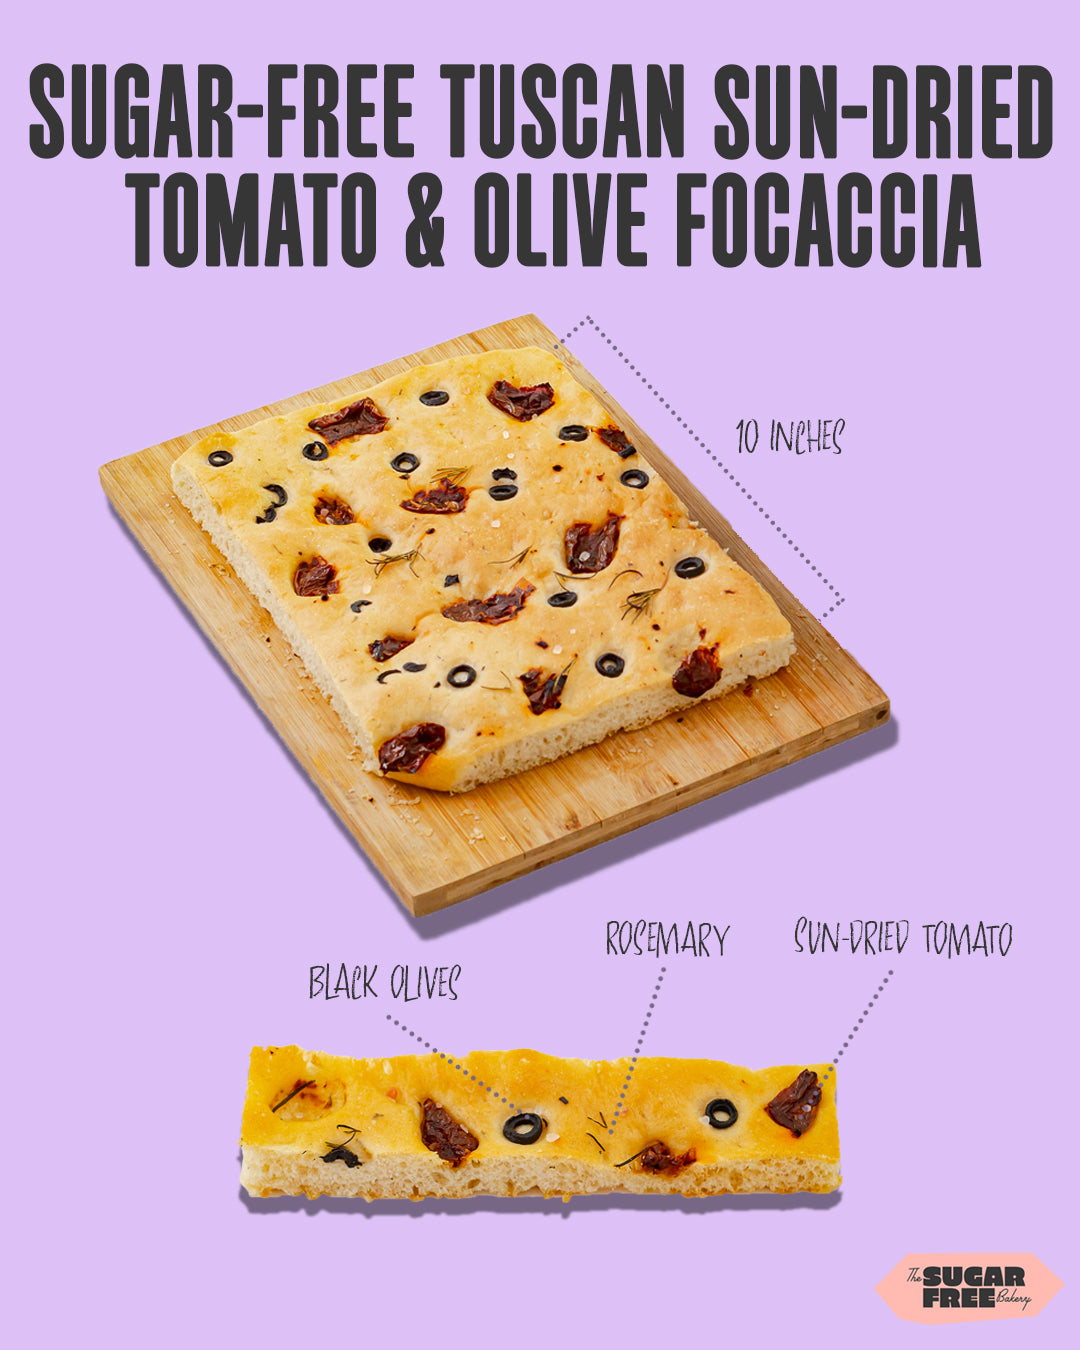 Tuscan Sun-dried Tomato & Olive Focaccia